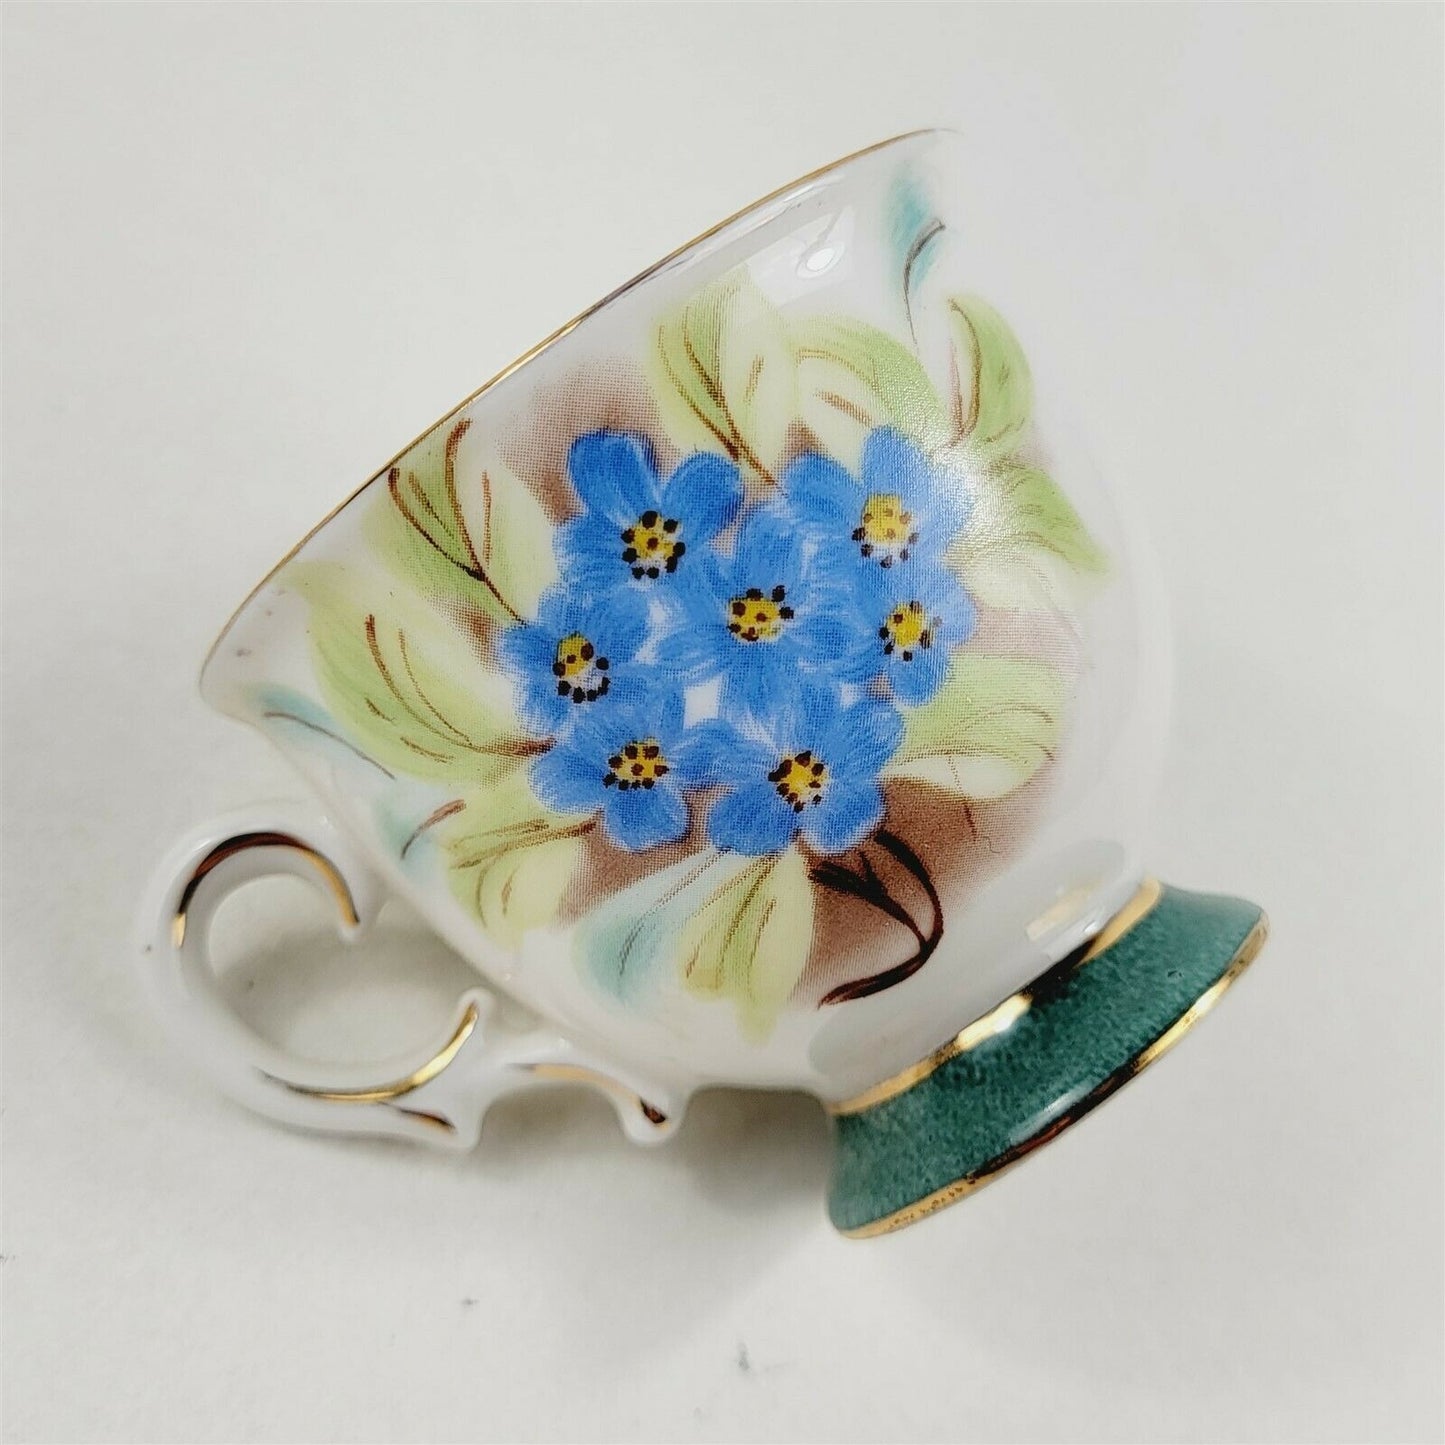 Hong Sheng Blue Floral Decorative Tea Cup & Saucer